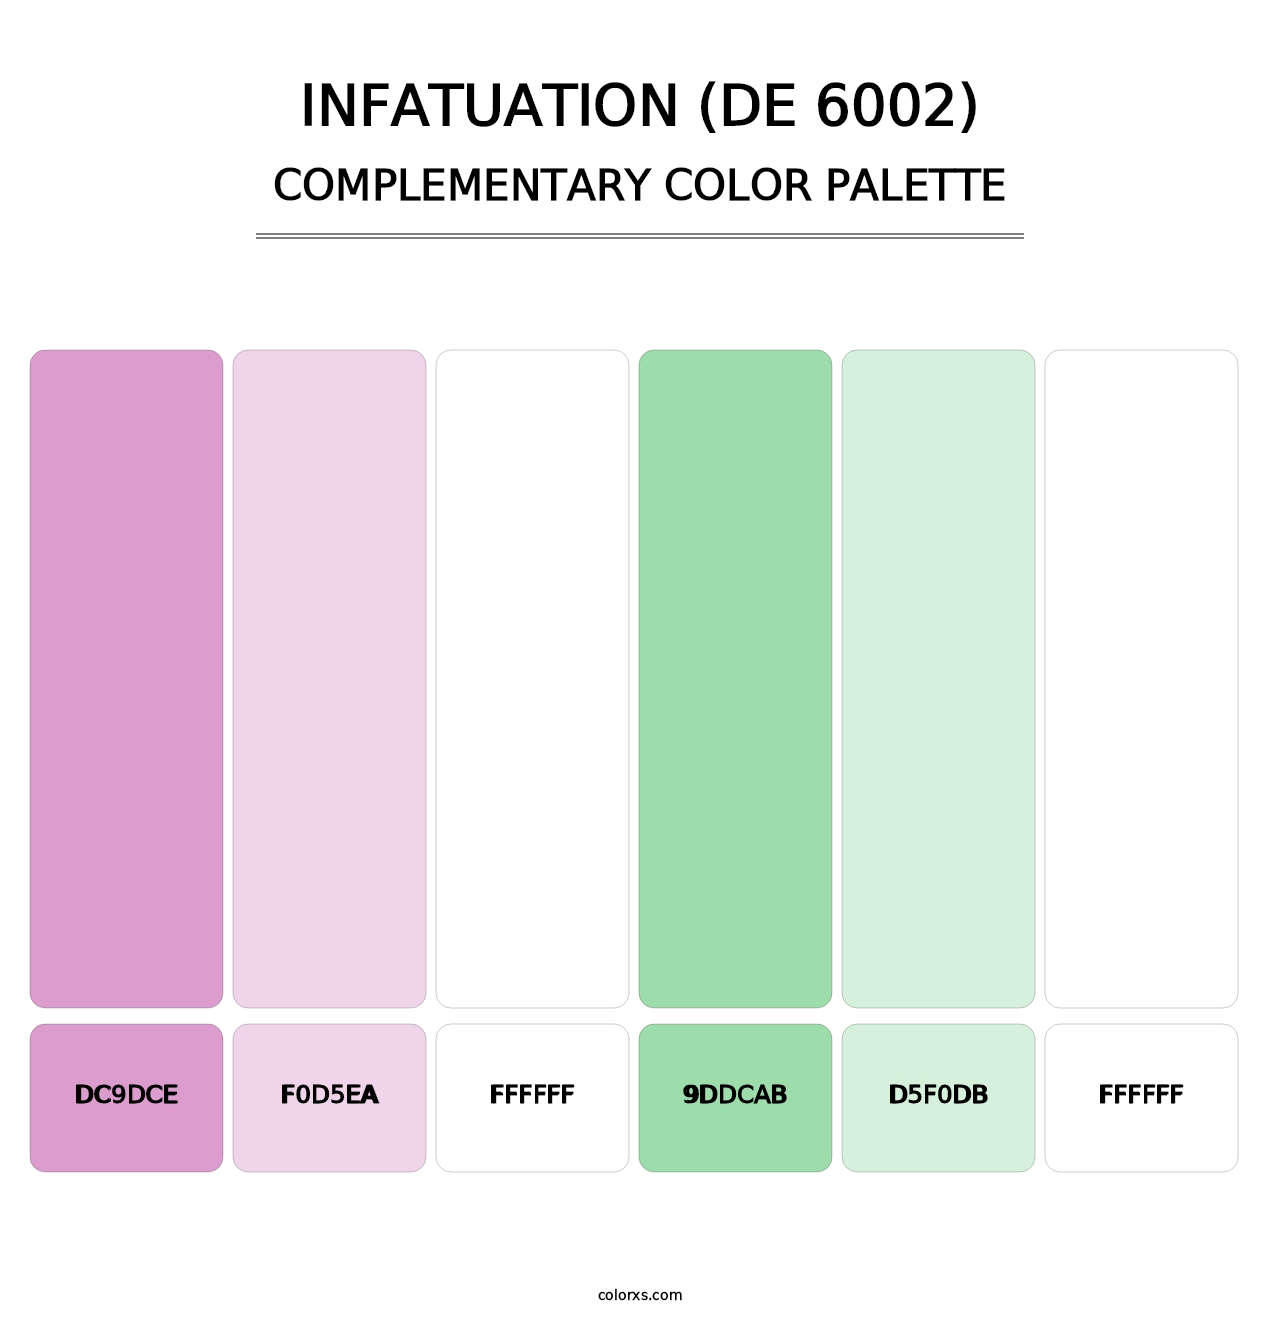 Infatuation (DE 6002) - Complementary Color Palette